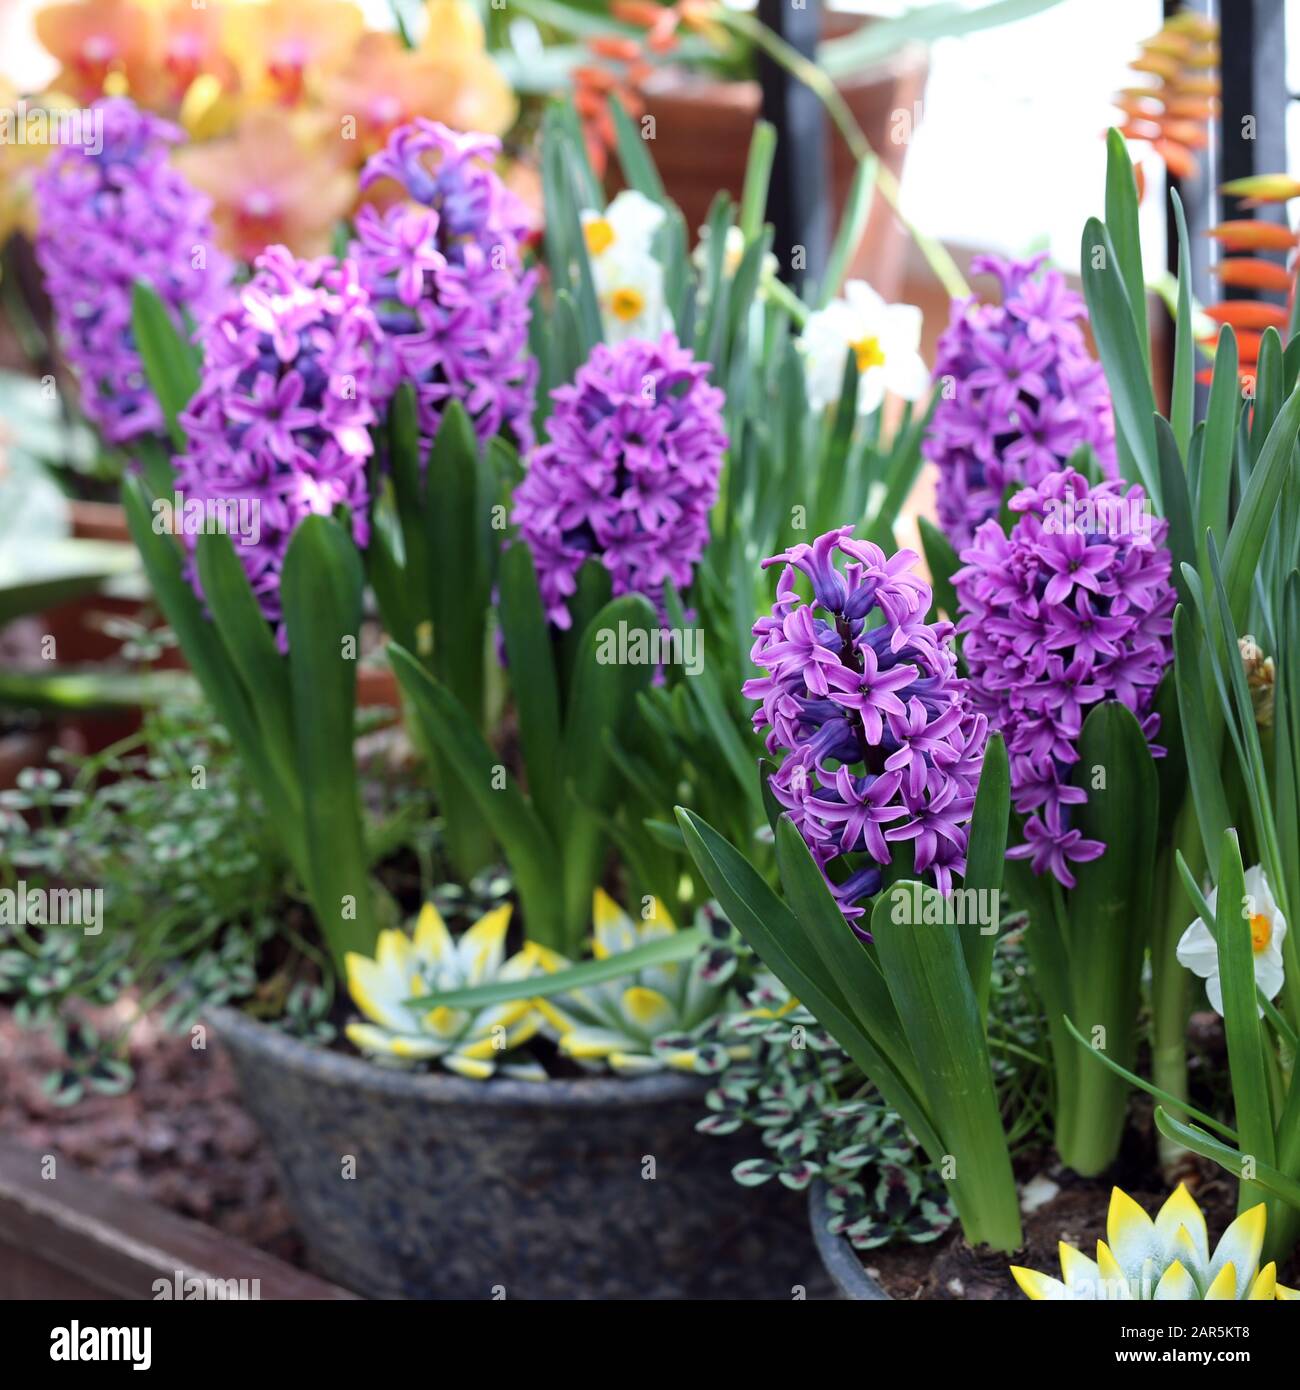 Fiori giacinto giallo e viola in fiore con abbondanza di foglie verdi. Bei fiori di inizio primavera usati per celebrare la Pasqua. Immagine a colori di primo piano. Foto Stock